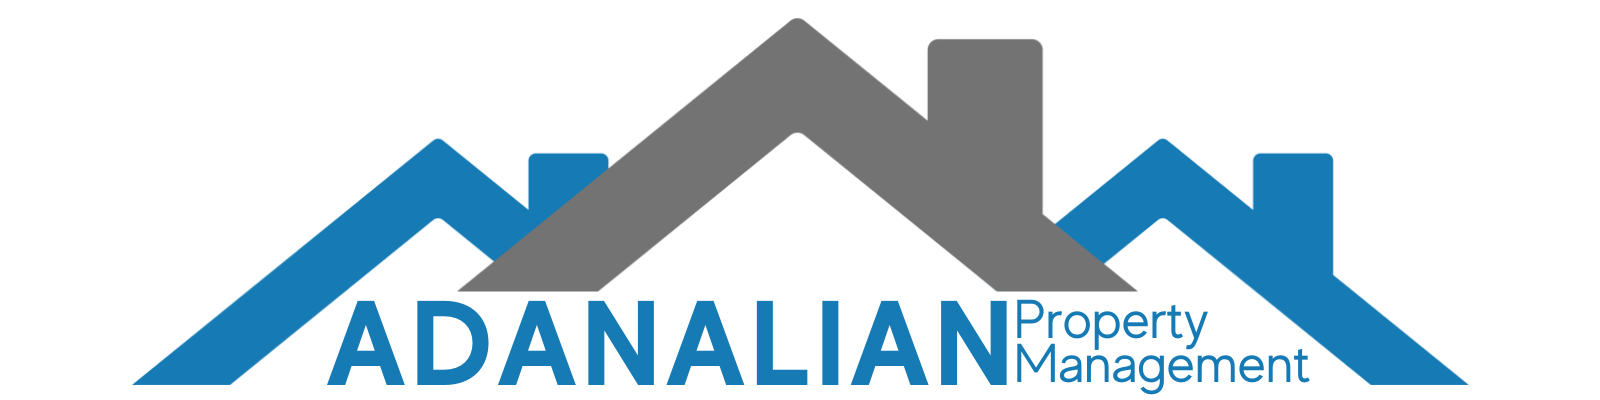 Adanalian Logo with background